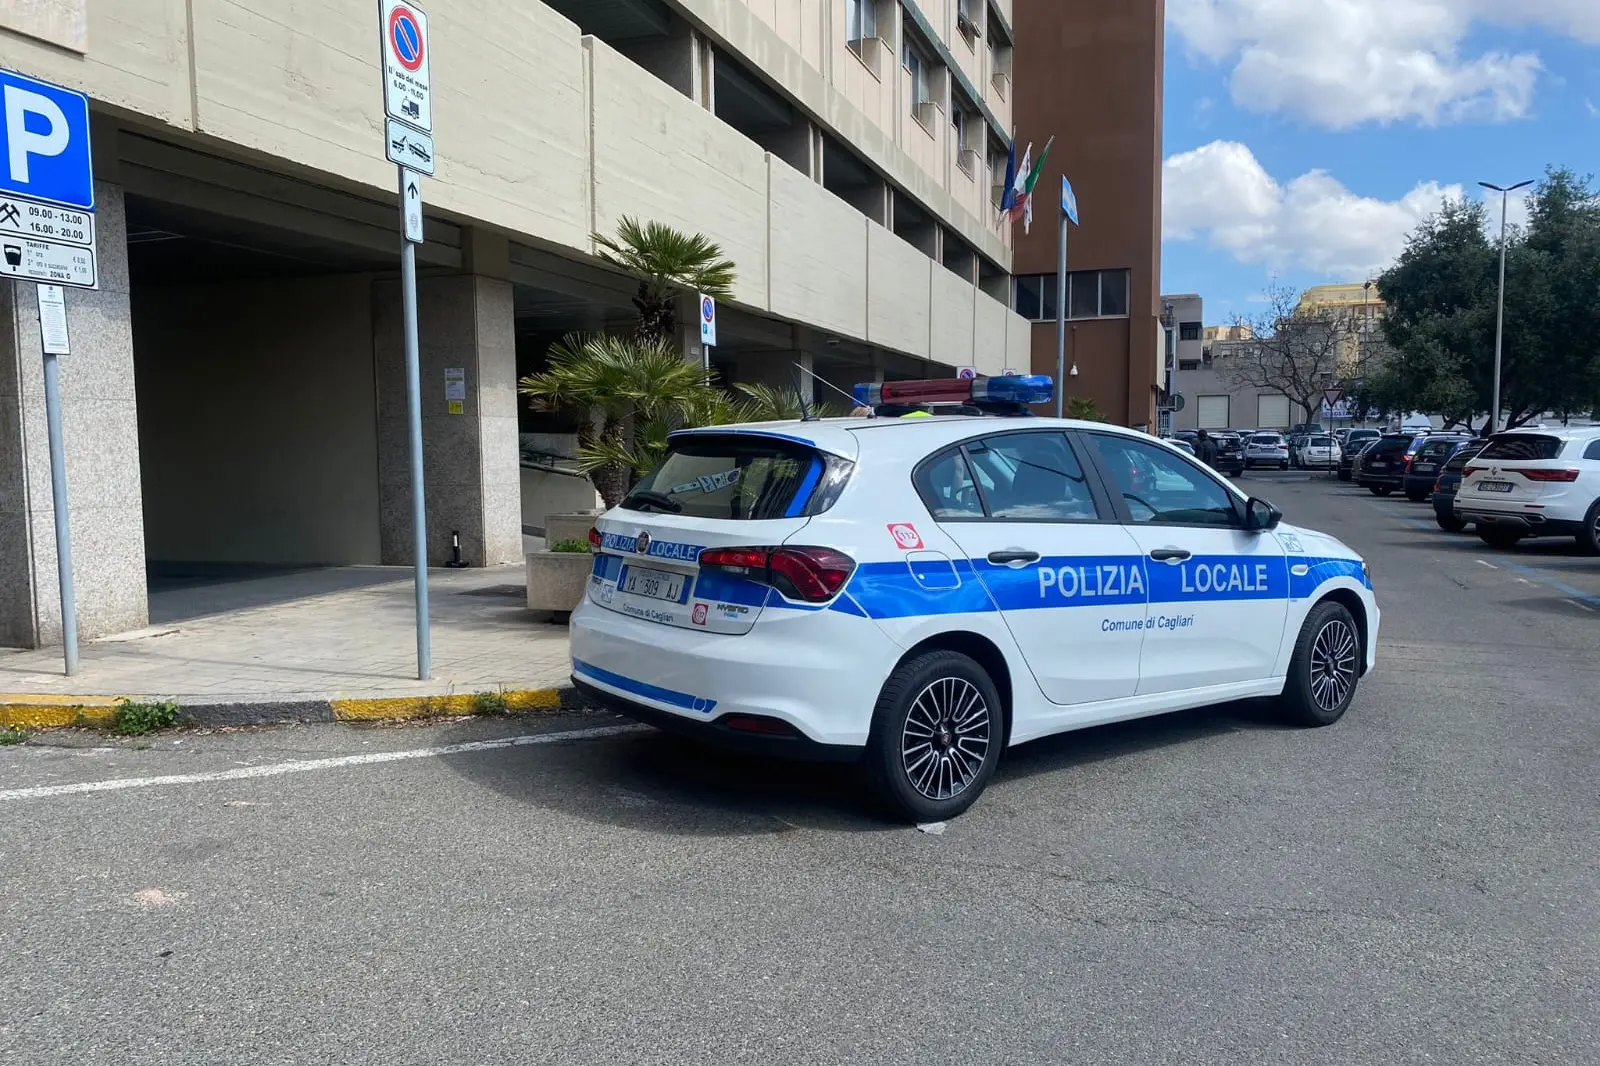 Local police in Cagliari